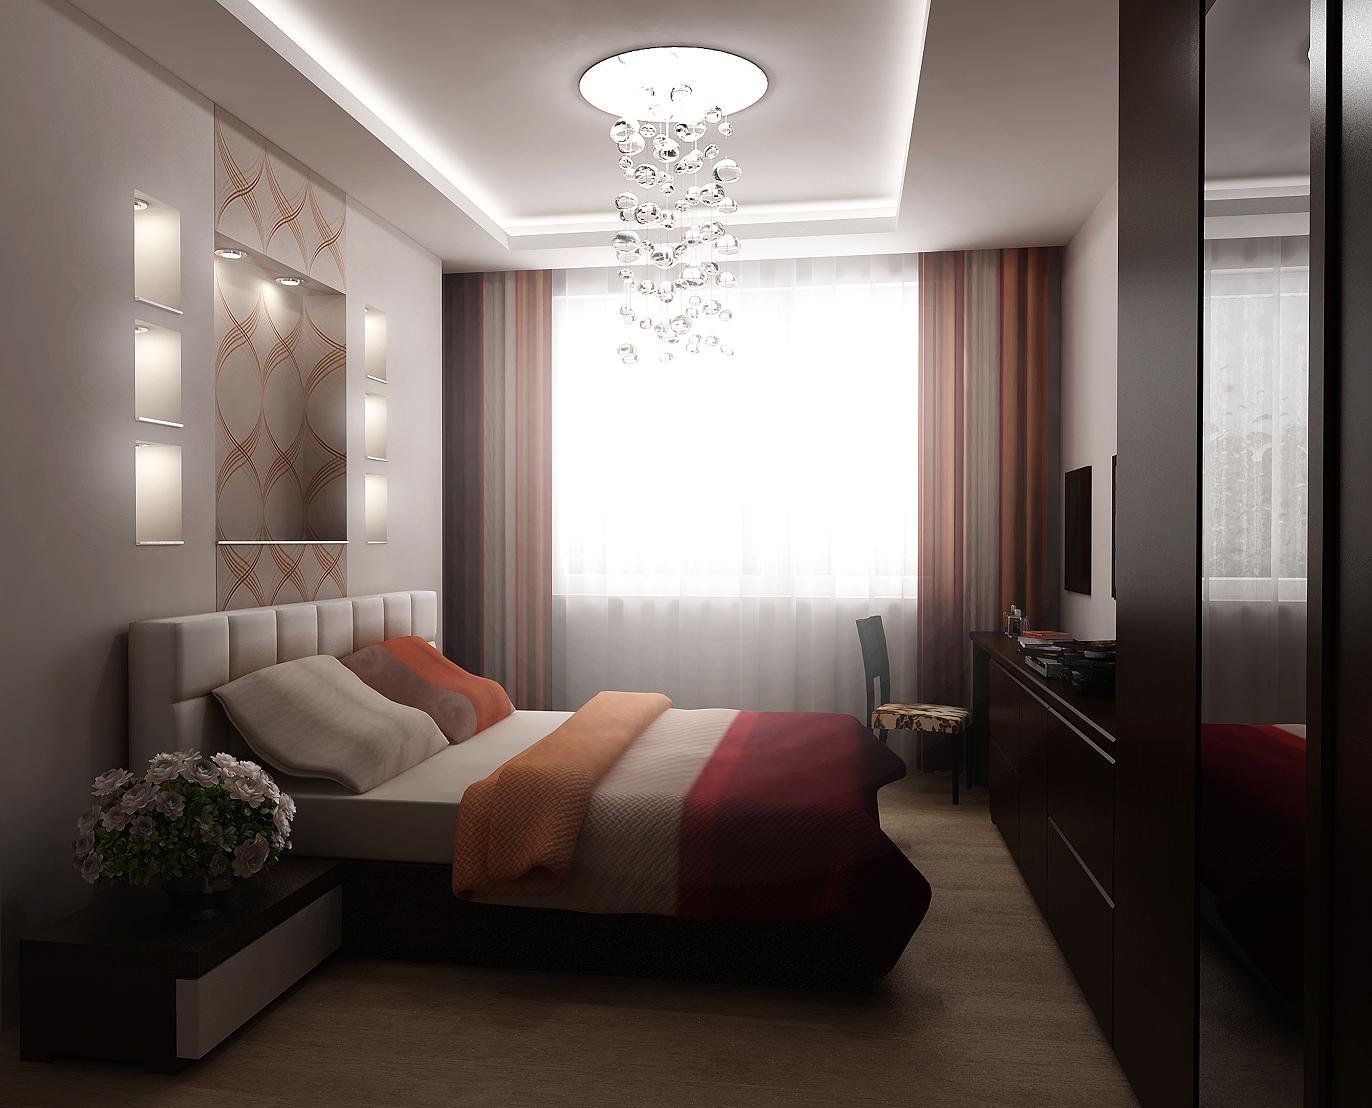 Планировка спальни площадью в 15 кв м Современные дизайн проекты и идеи оформления интерьера прямоугольной комнаты для сна